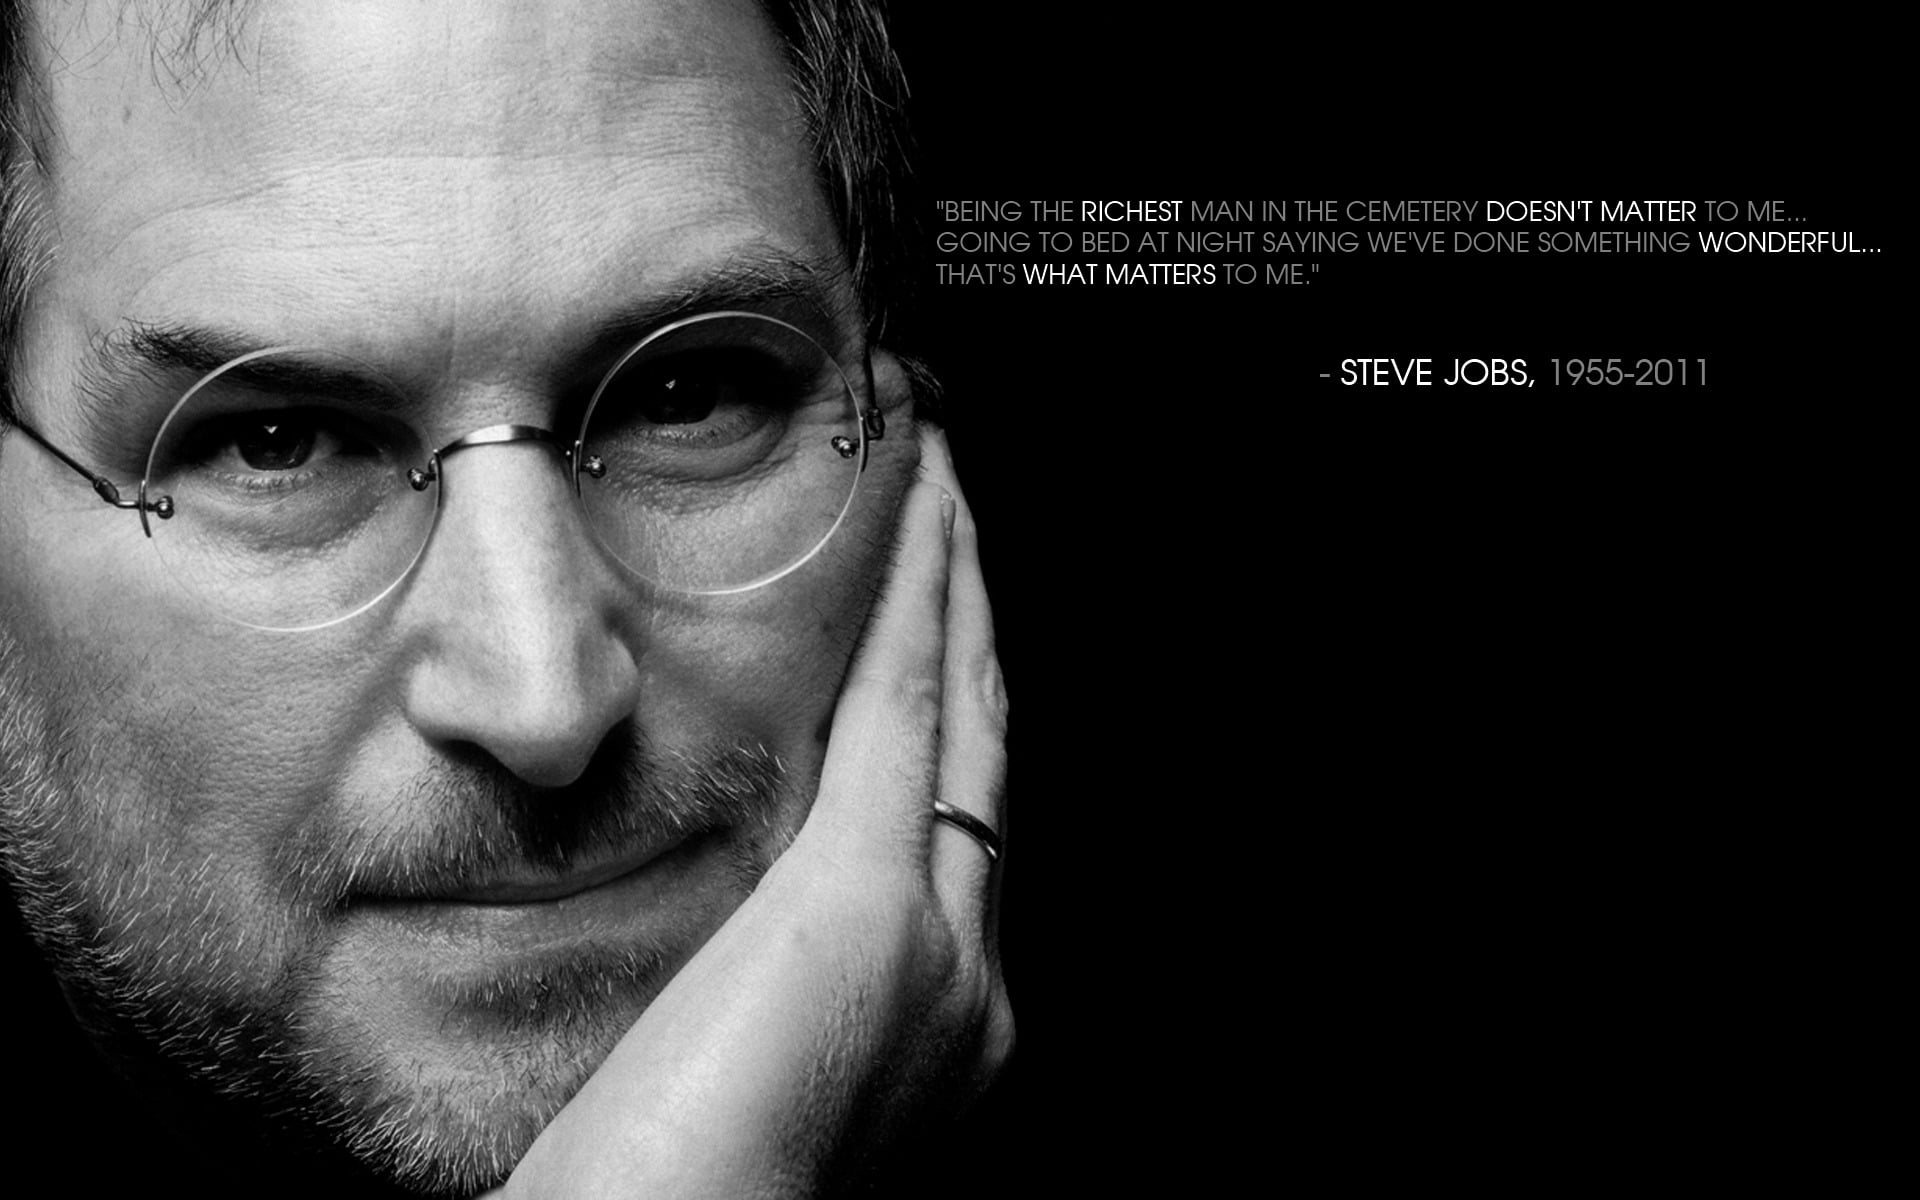 Steve Jobs, quote, inspirational, motivational, monochrome, portrait